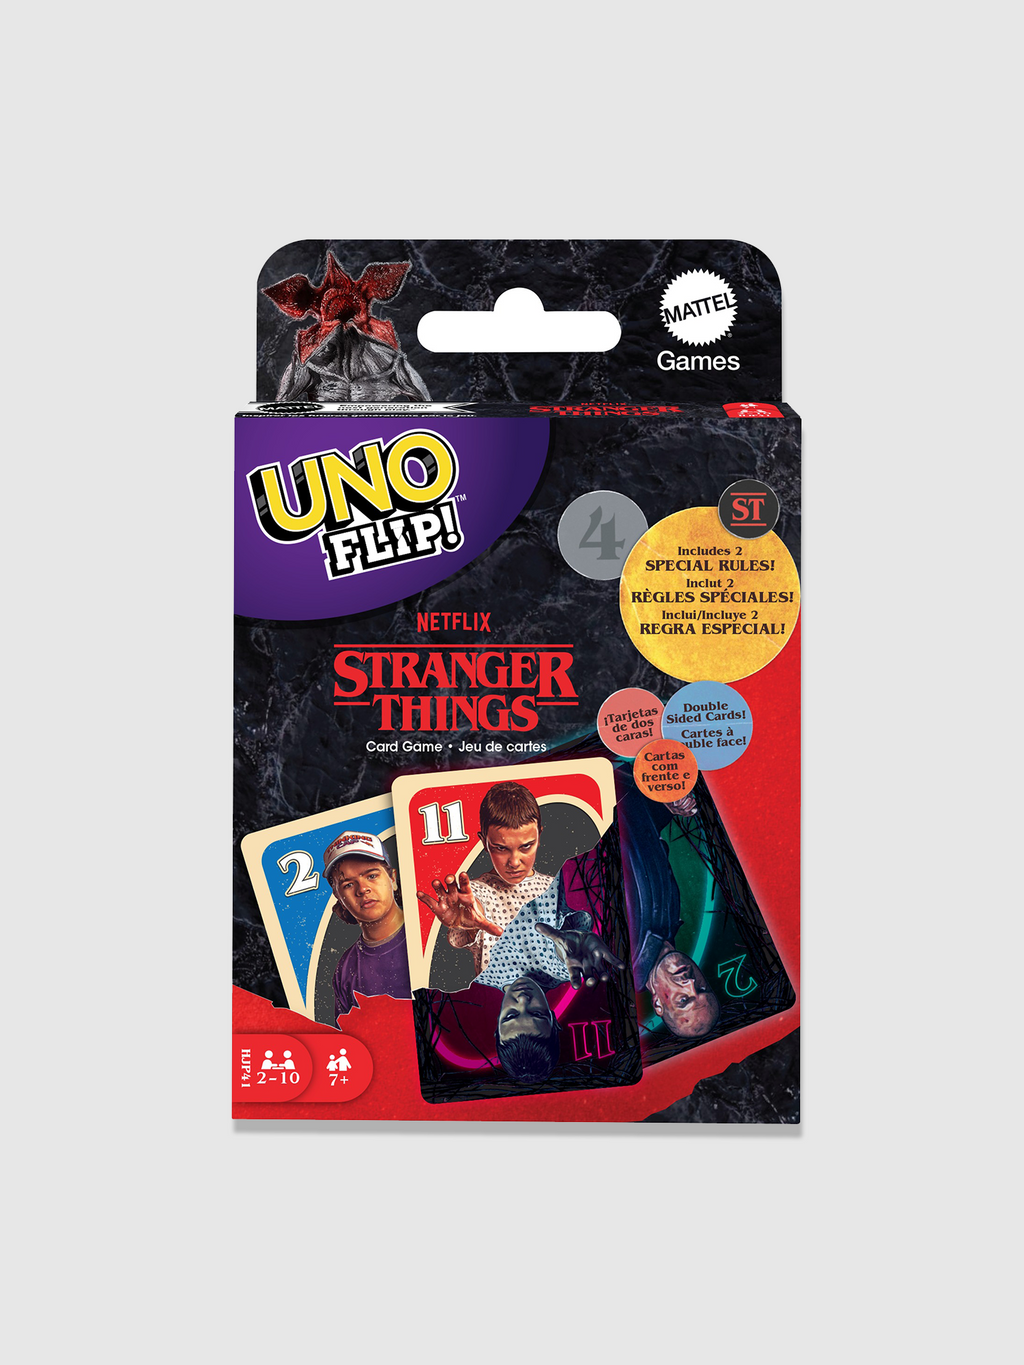  UNO FLIP CARD GAME : Merchandise: Books